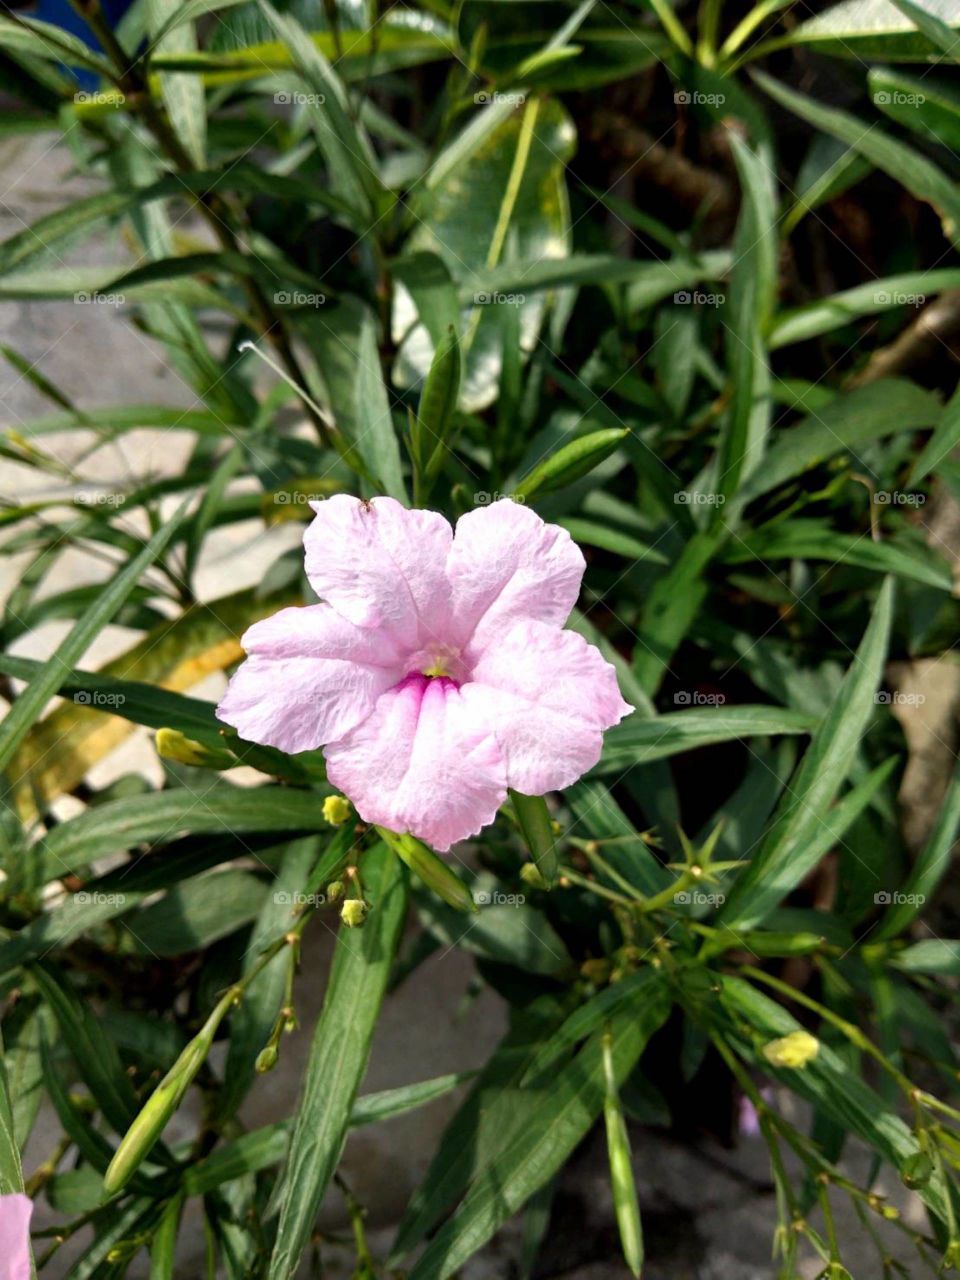 Pink Flower in my gardern.